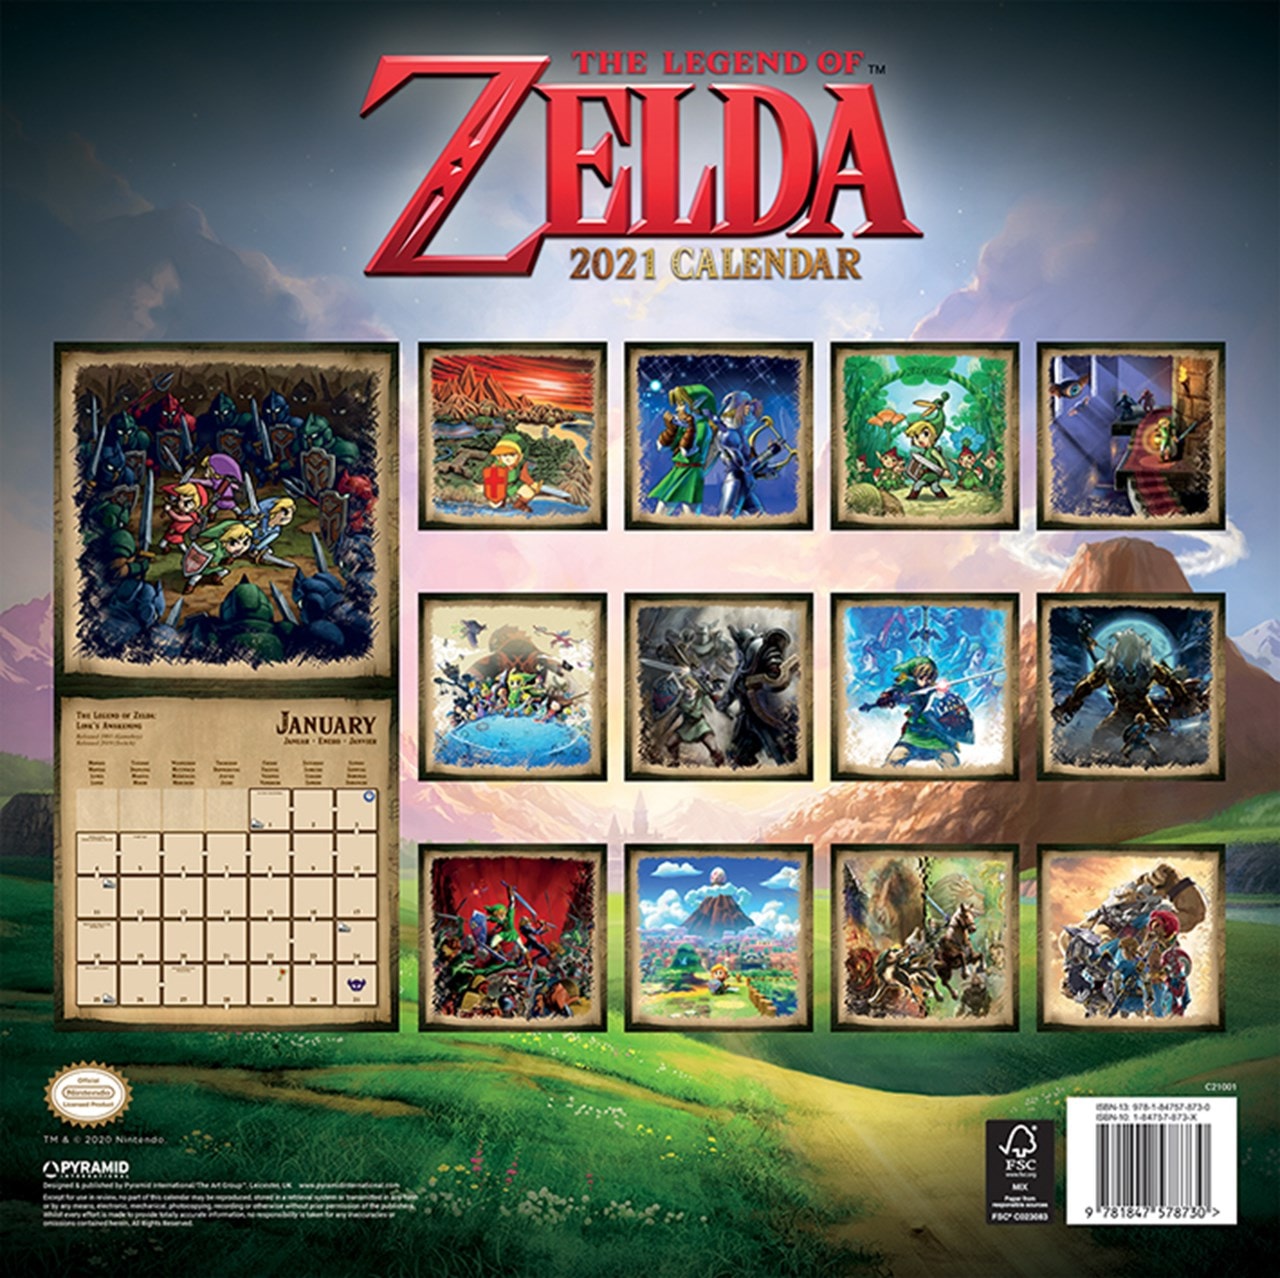 The Legend Of Zelda Square 2021 Calendar Calendars Free shipping